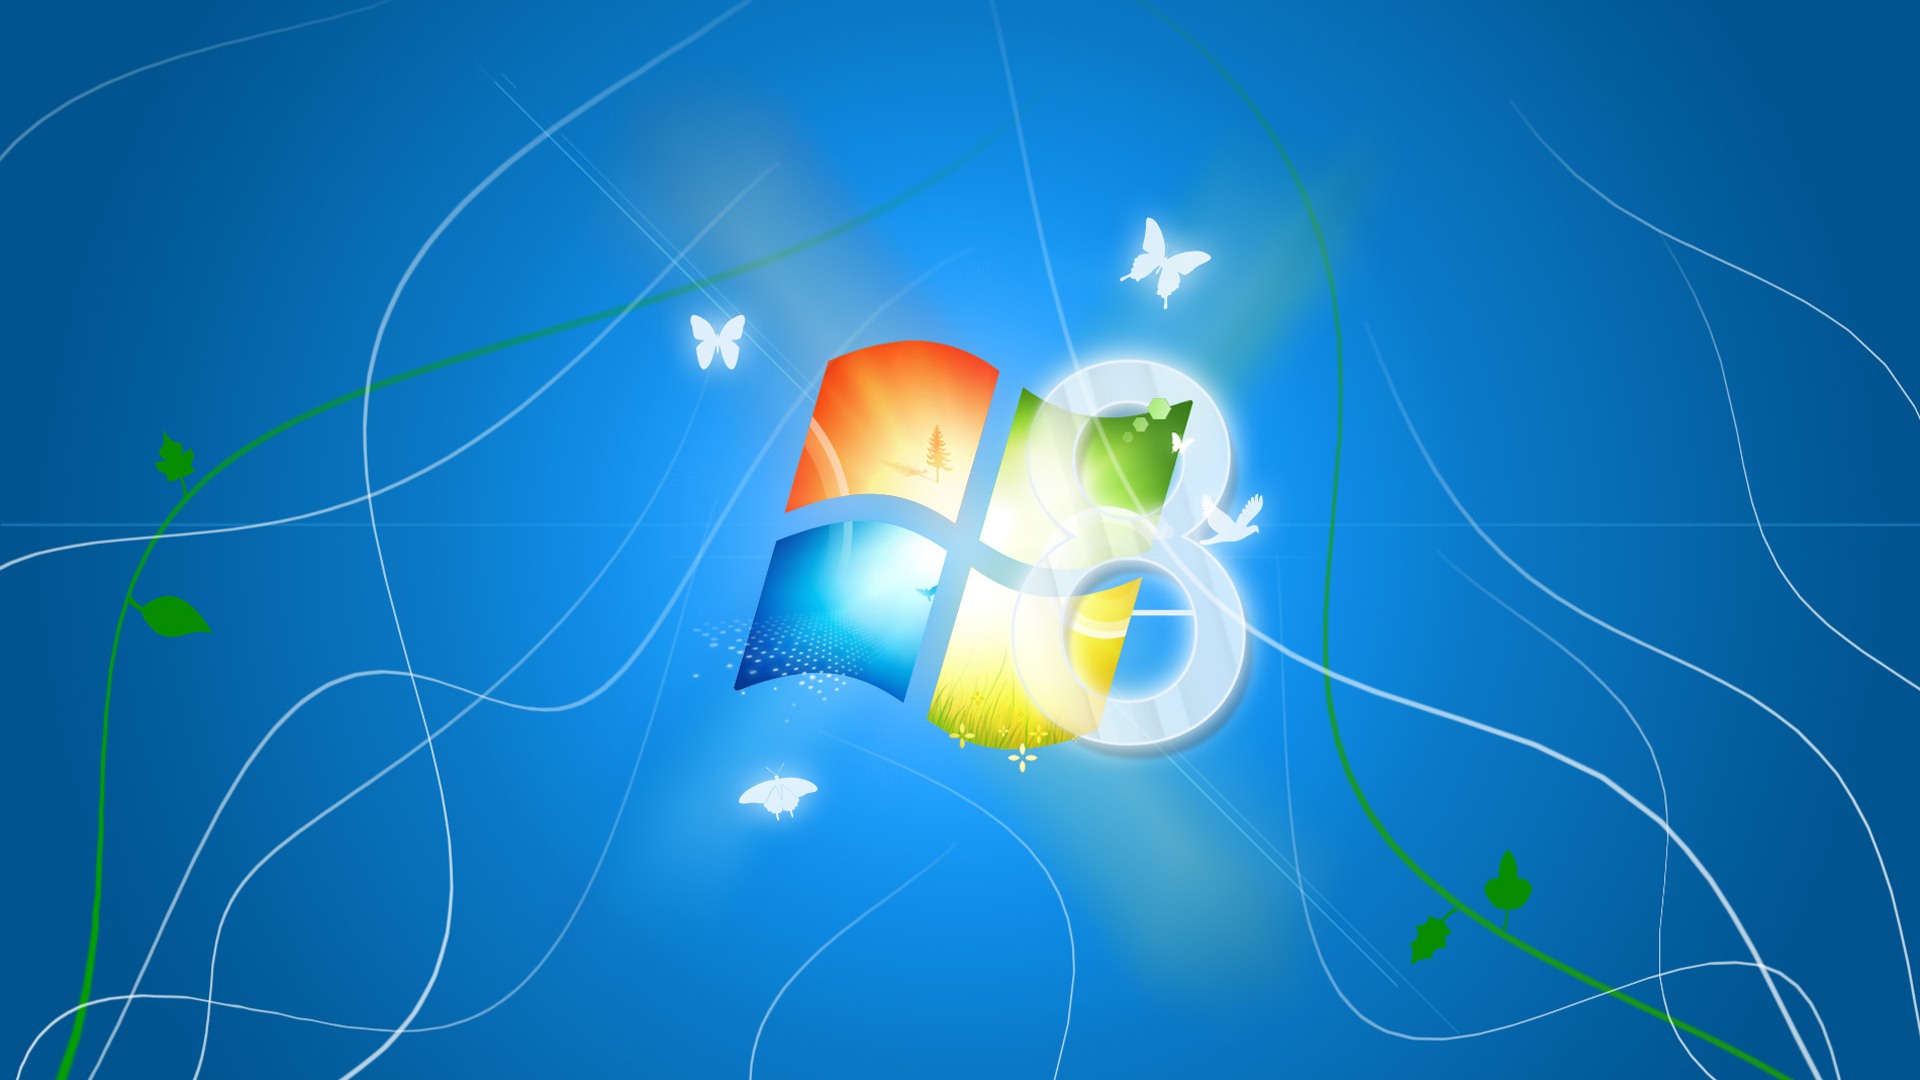 Windows 8 Theme Wallpaper (2) #5 - 1920x1080